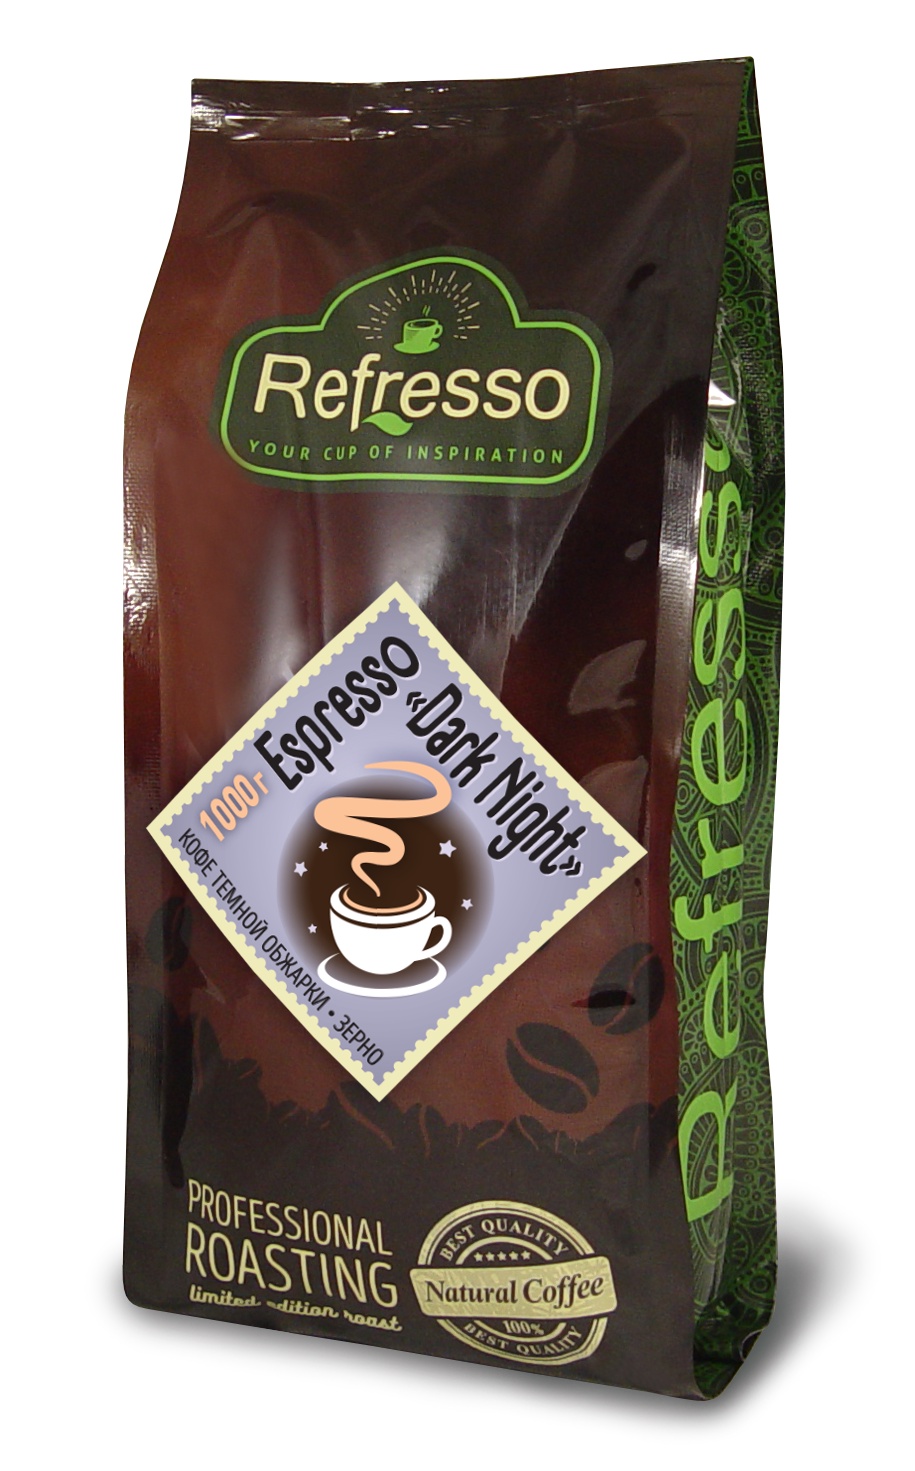 Espresso DARK NIGHT, Refresso (Эспрессо "ДАРК НАЙТ" кофе темной обжарки, помол под турку, Рефрессо), 200 г.